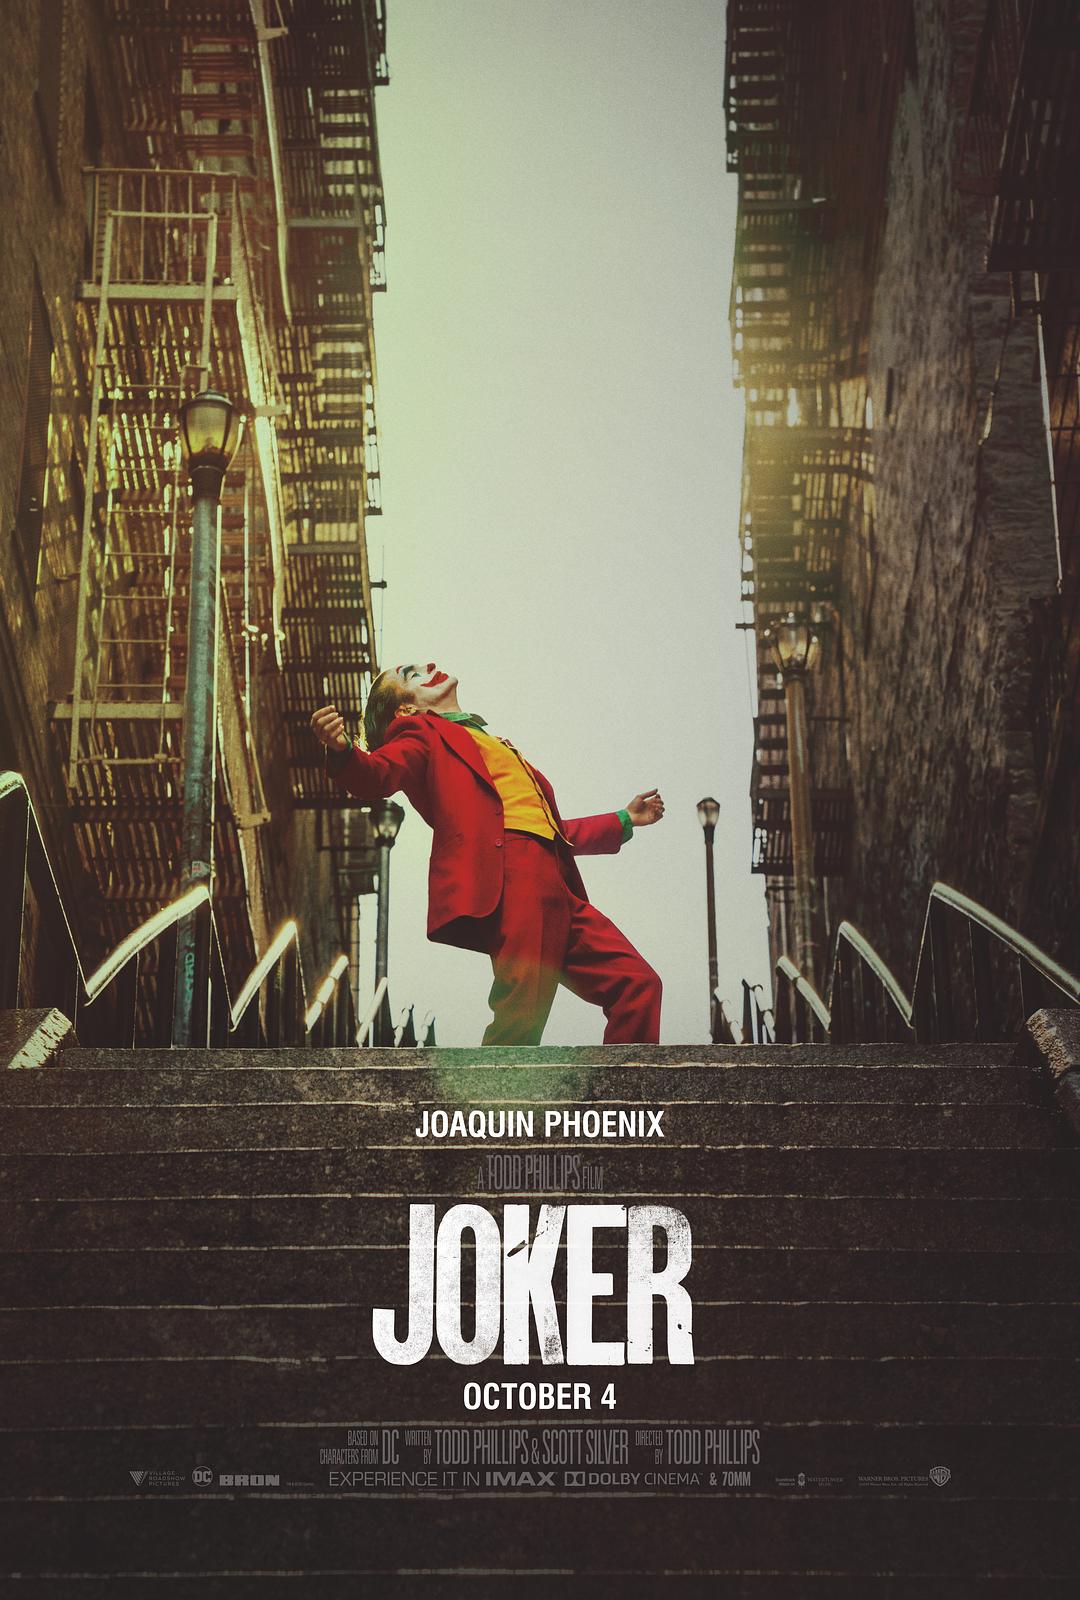 小丑 Joker.2019.2160p.BluRay.x265.10bit.SDR.DTS-HD.MA.TrueHD.7.1.Atmos-SWTYBLZ 44.01GB-1.png